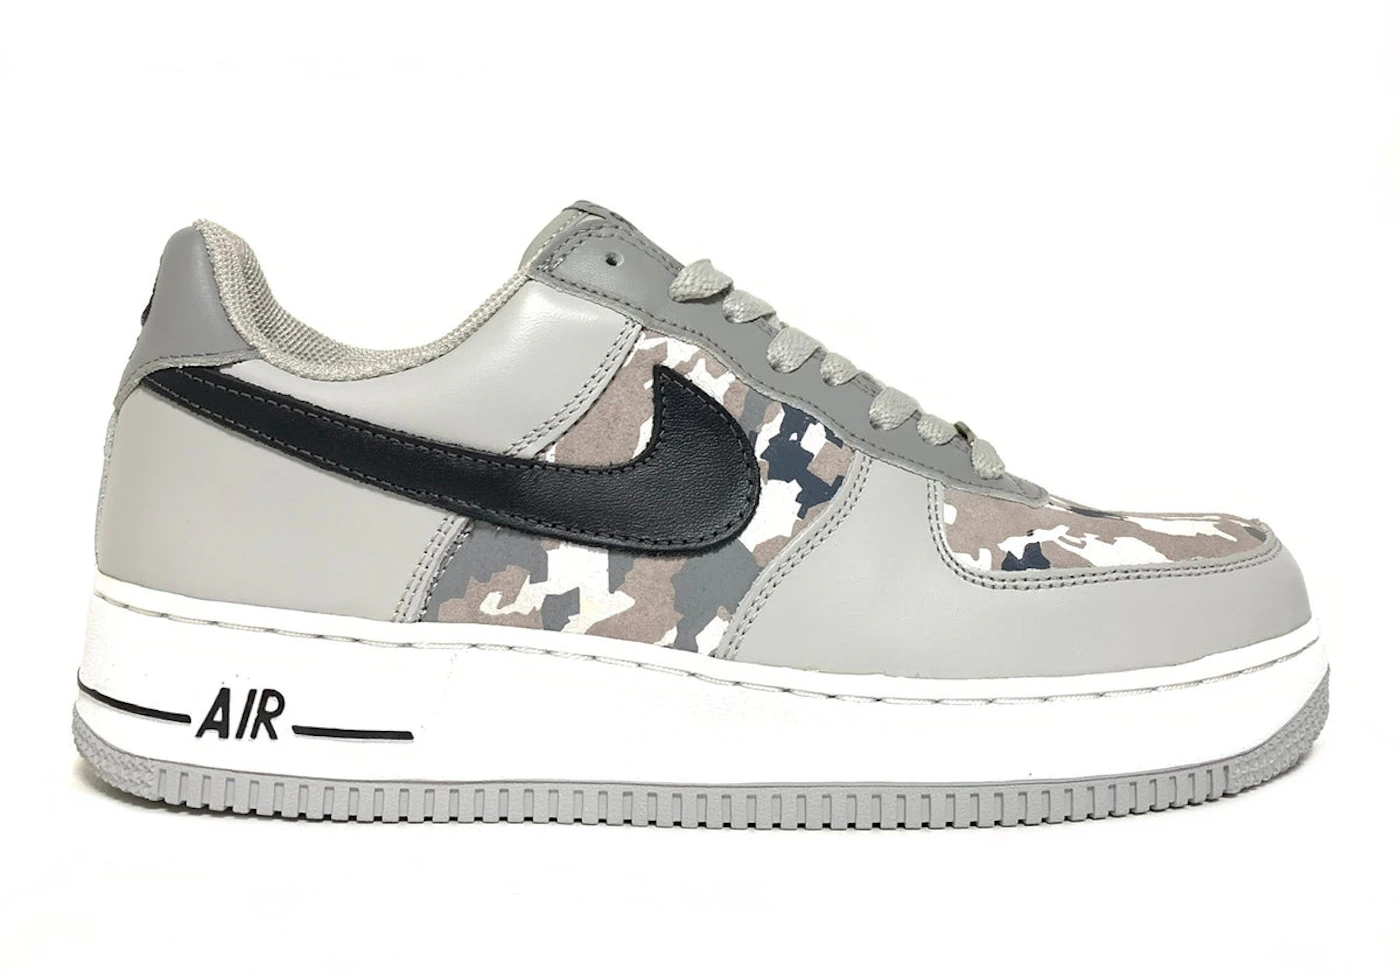 Nike Air Force 1 Low Premium Men's Shoes.